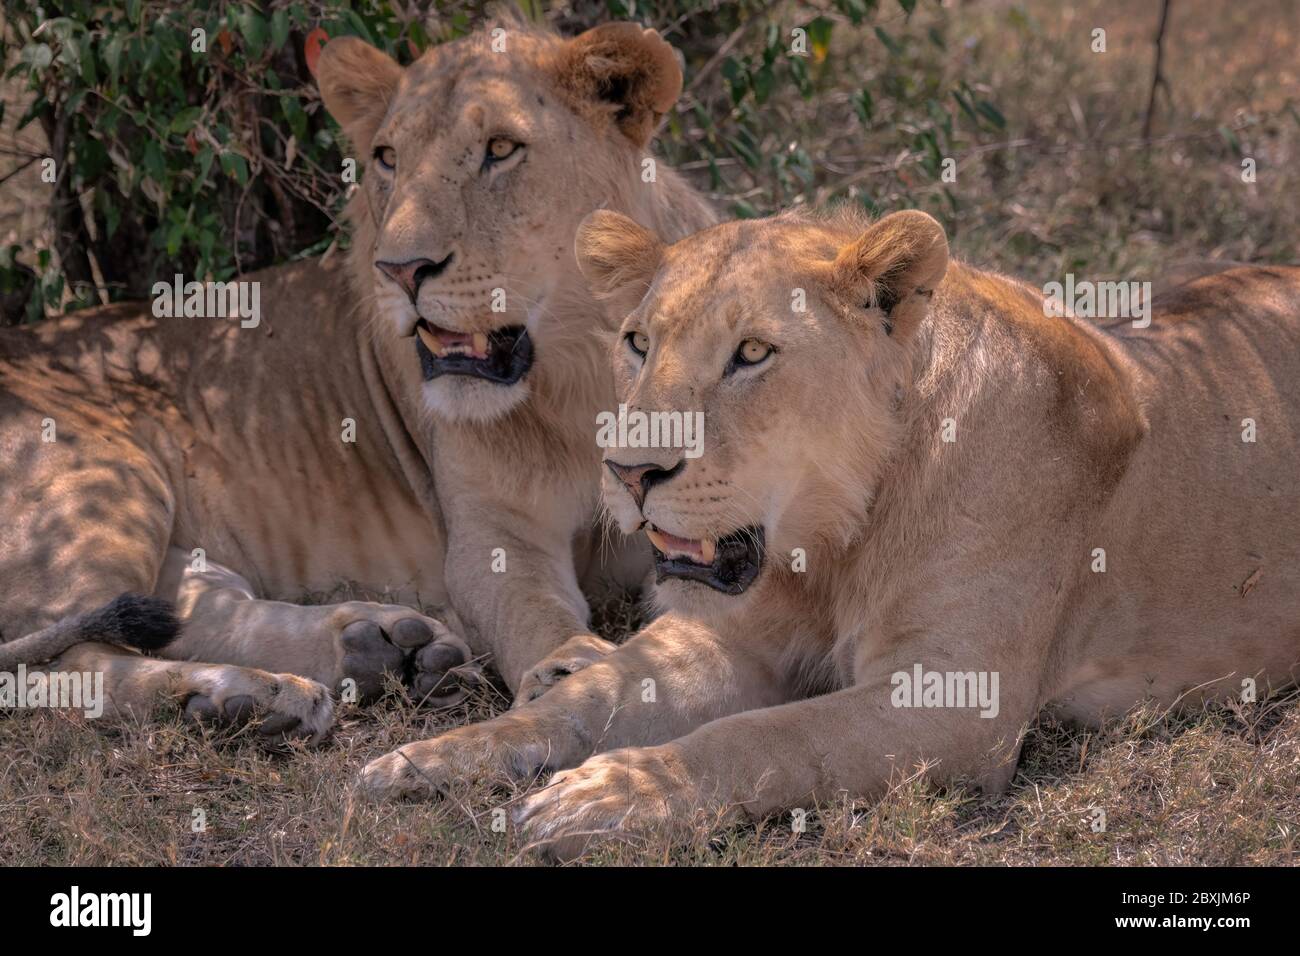 Nahaufnahme von zwei jungen Löwen mit ihren Mägen, die gerade erst zu wachsen beginnen. Aufnahme in der Masai Mara, Kenia. Stockfoto